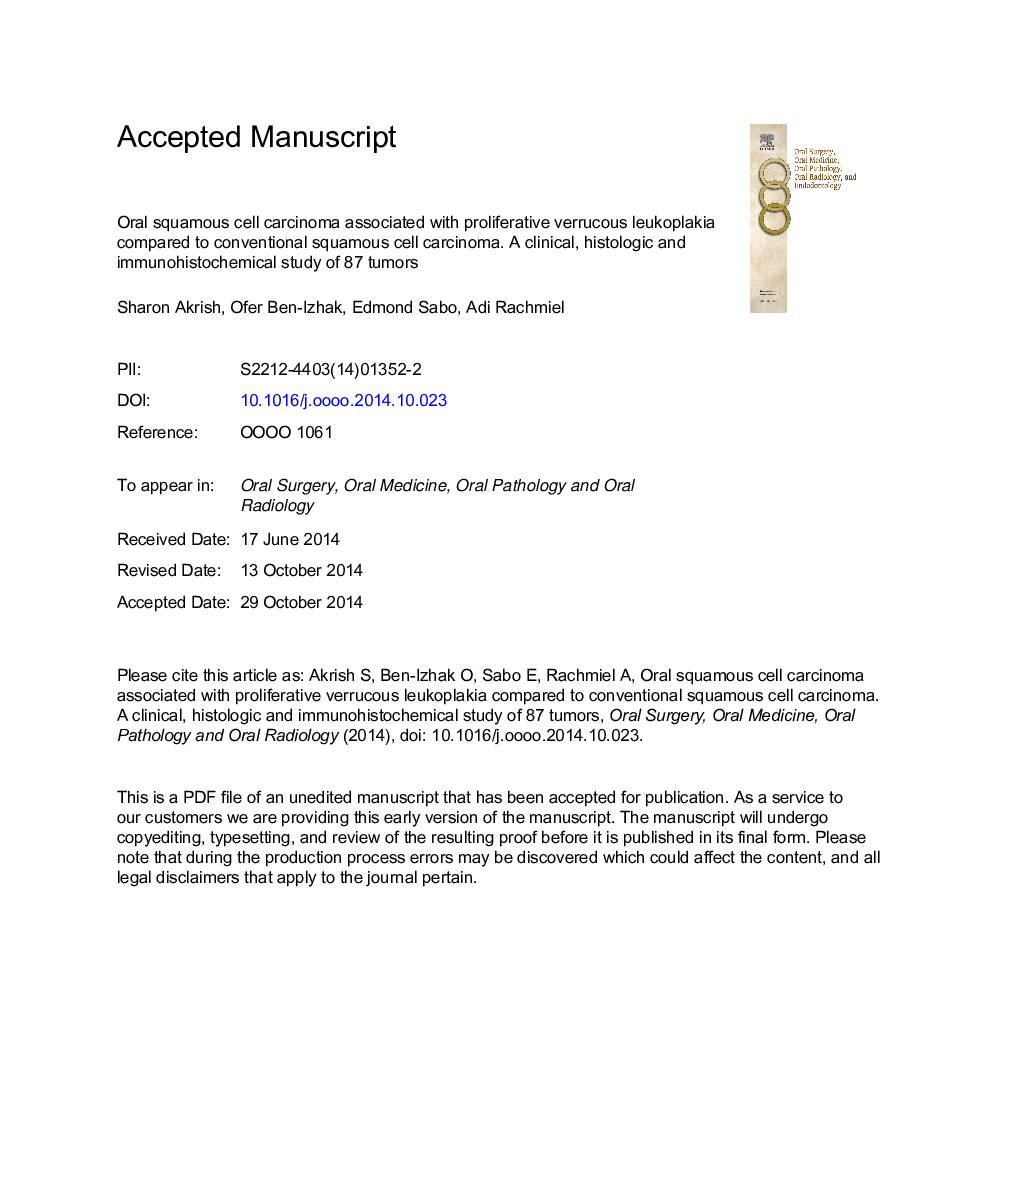 کارسینوم سلول سنگفرشی خوراکی همراه با لکوپالاکی ورید وریدی در مقایسه با کارسینوم سلول سنگفرشی معمول - یک مطالعه بالینی، بافت شناسی و ایمونوهیستوشیمی 